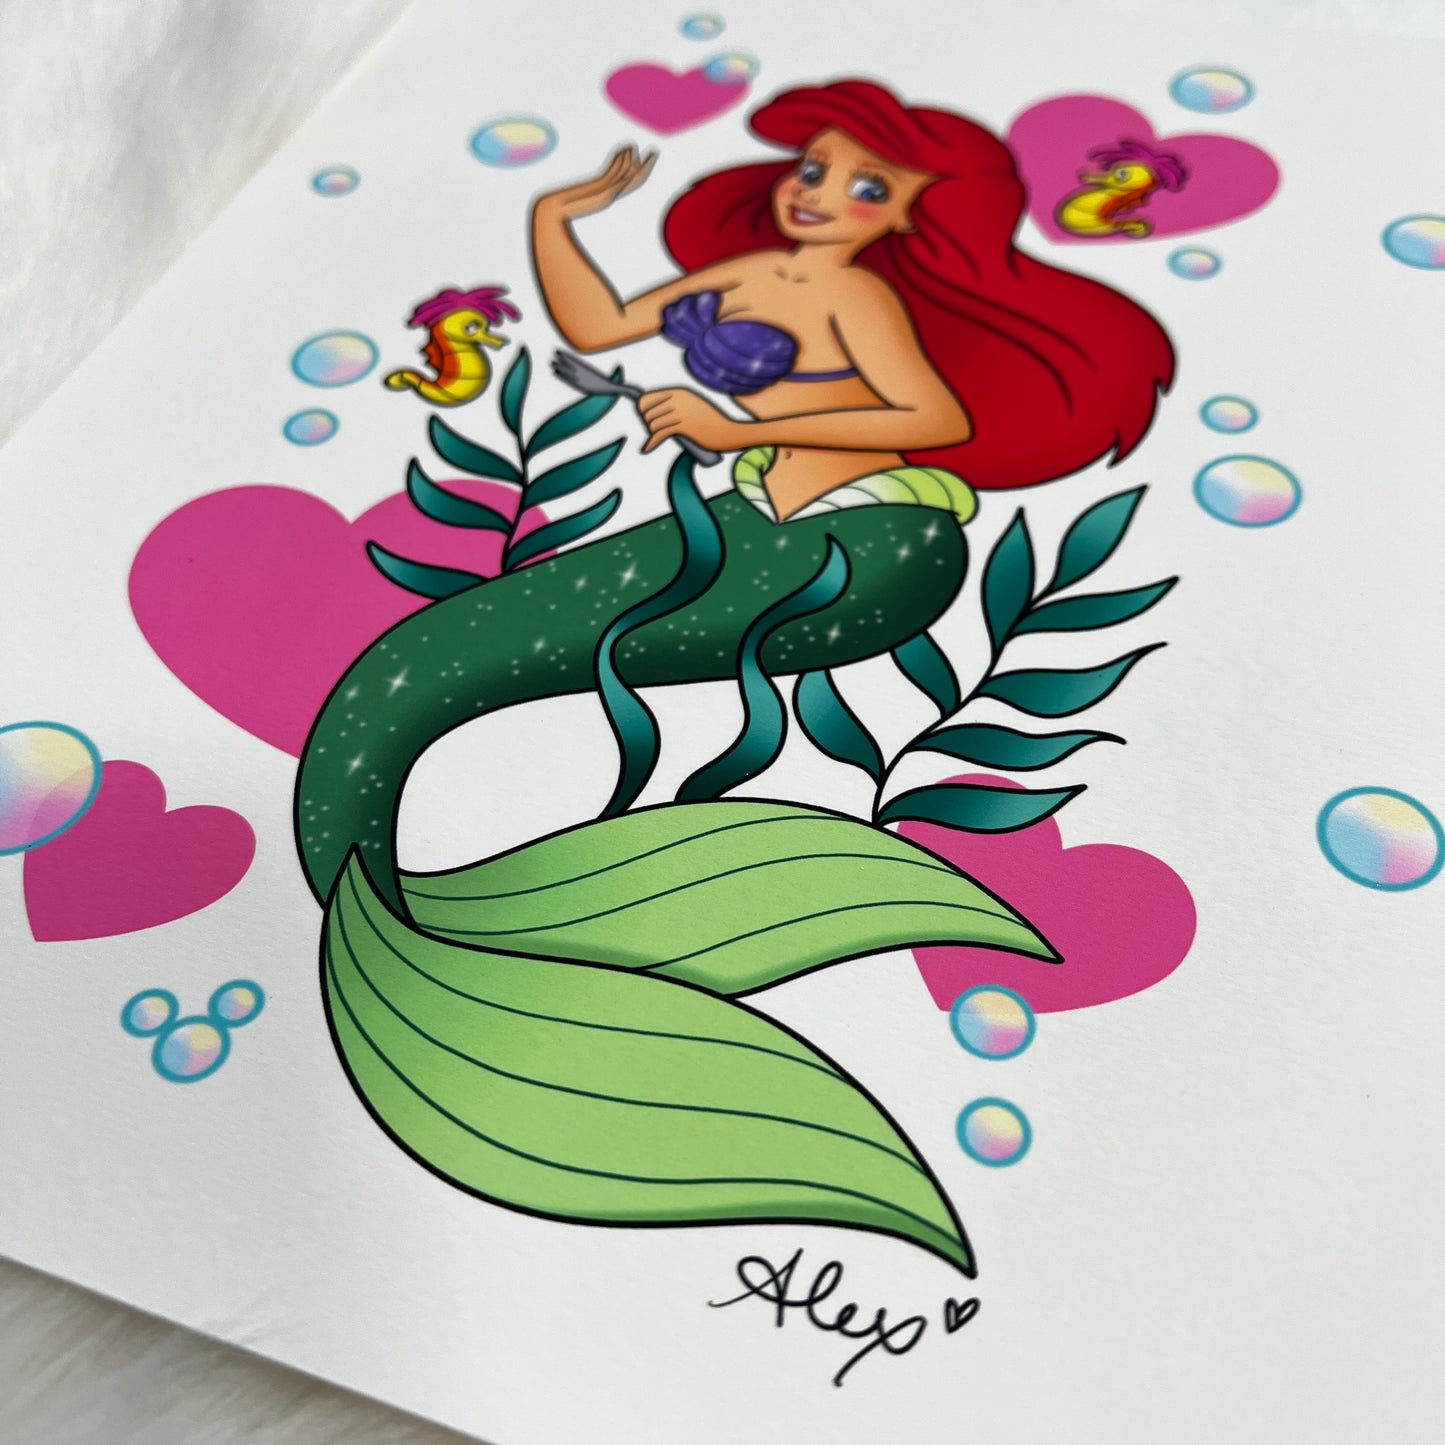 Little Mermaid - Print